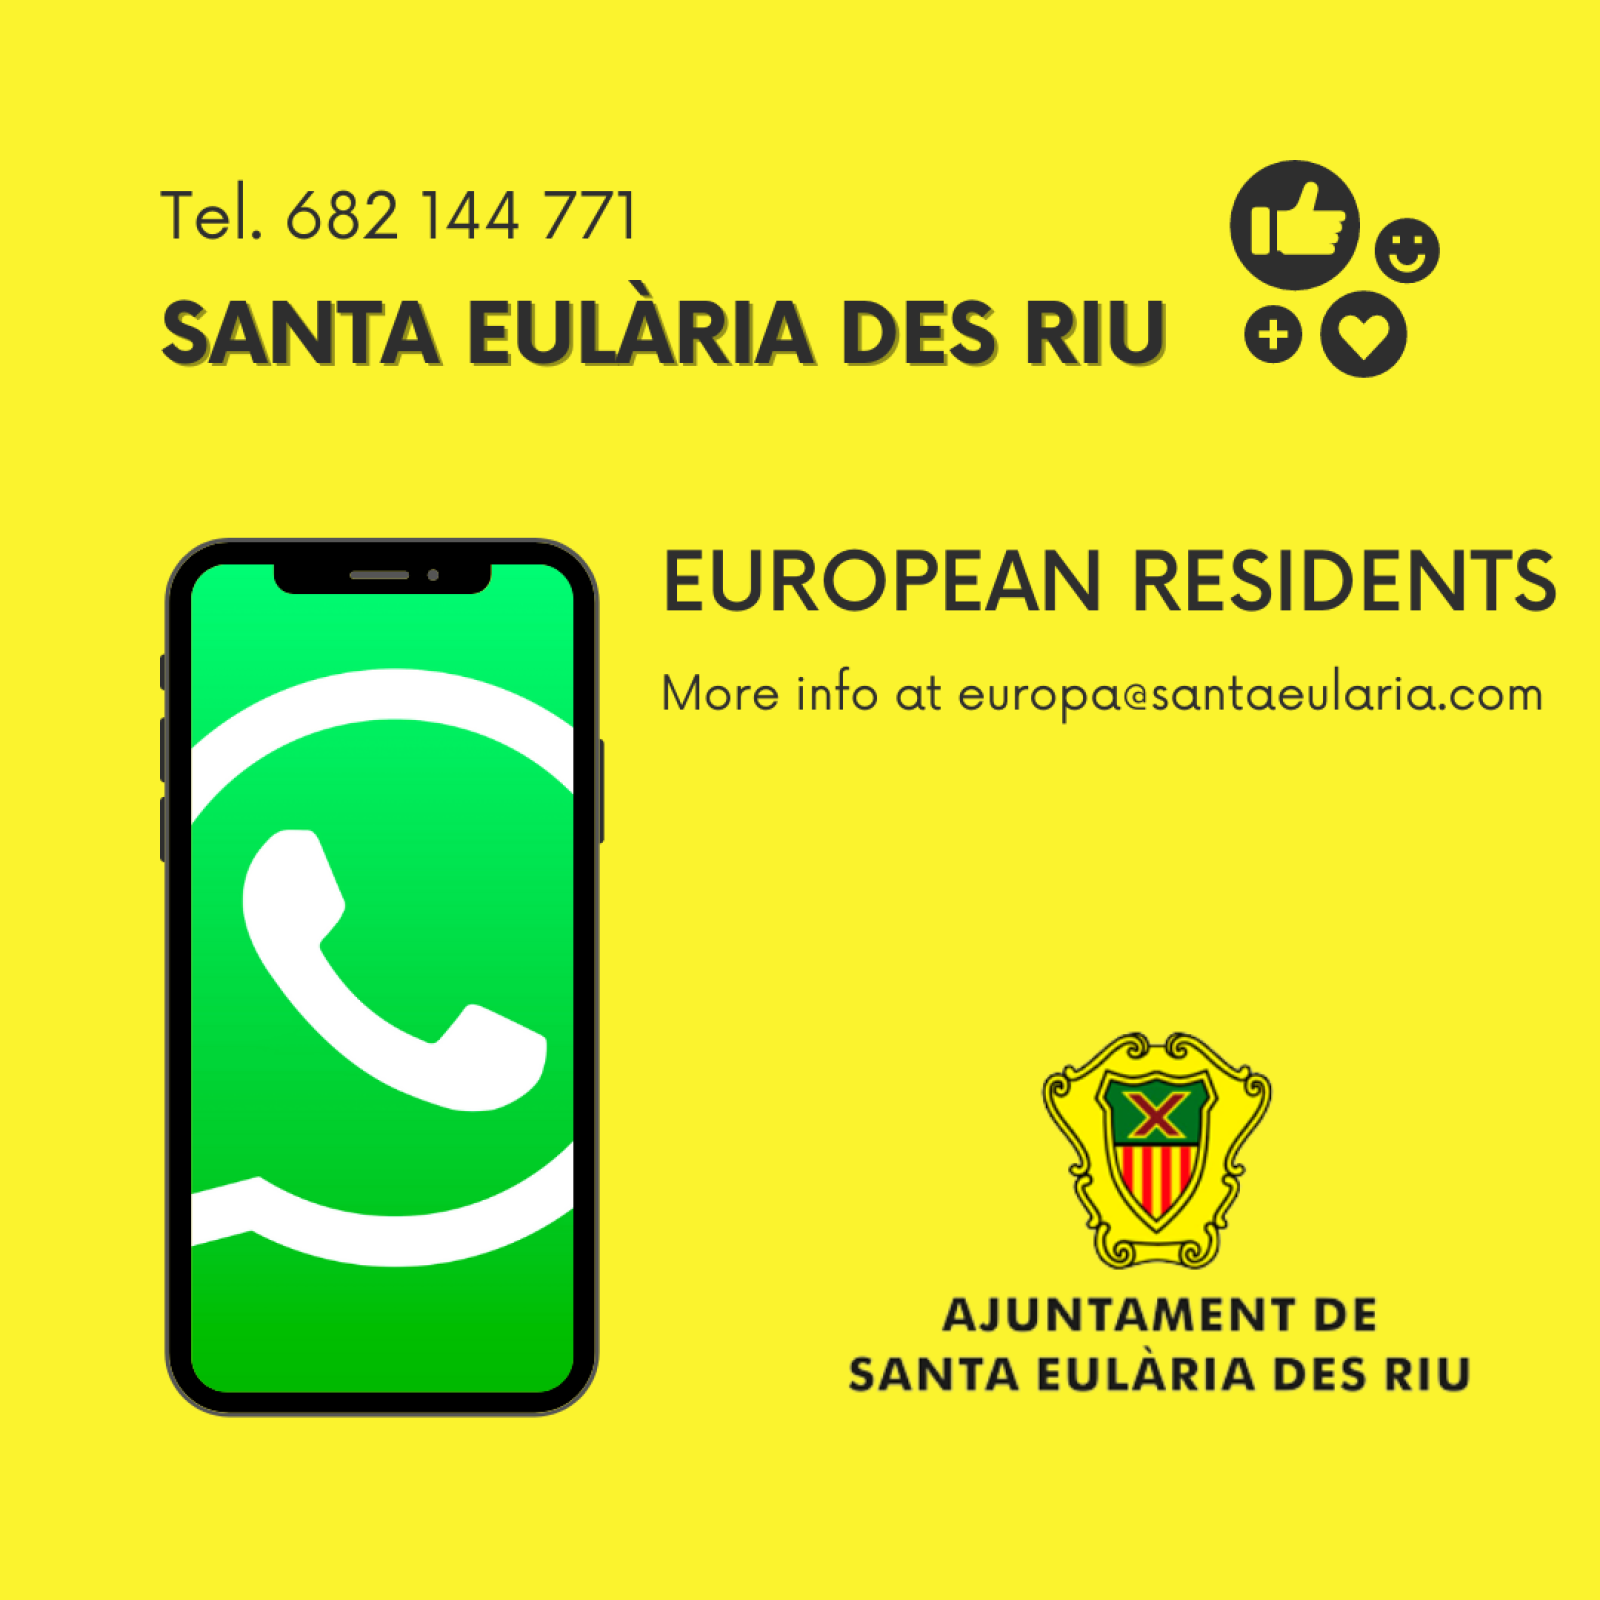 Santa Eulària des Riu añade servicio de WhatsApp y nuevos cursos de castellano para residentes europeos de cara al curso 2022-23